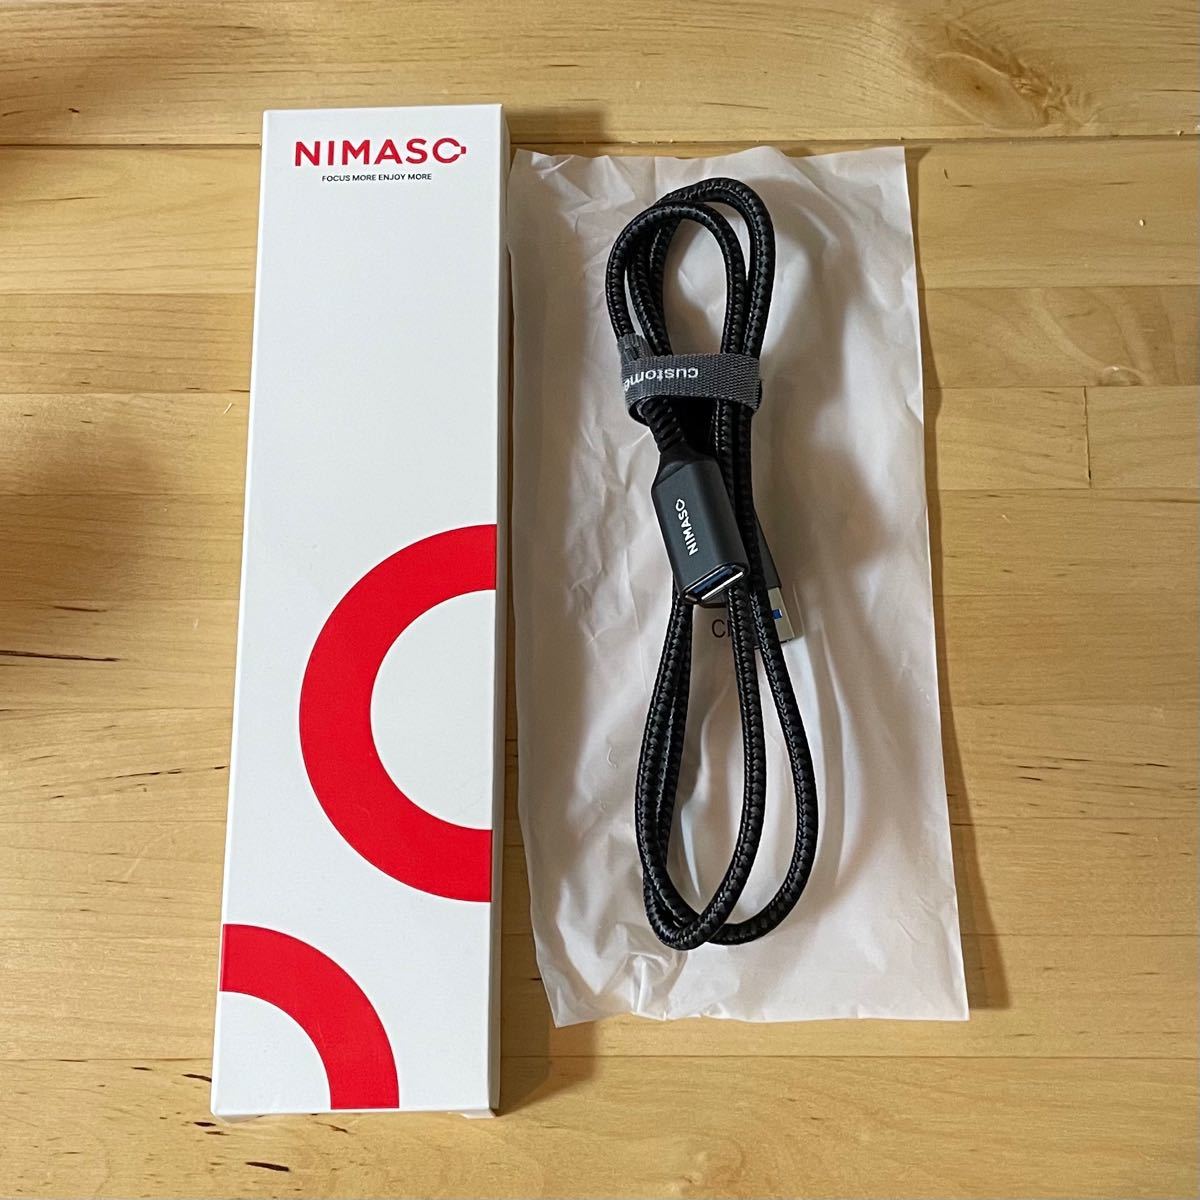 NIMASO USB 延長ケーブル USB3.0規格 1.0m (タイプAオス - タイプAメス) USB 延長 コード